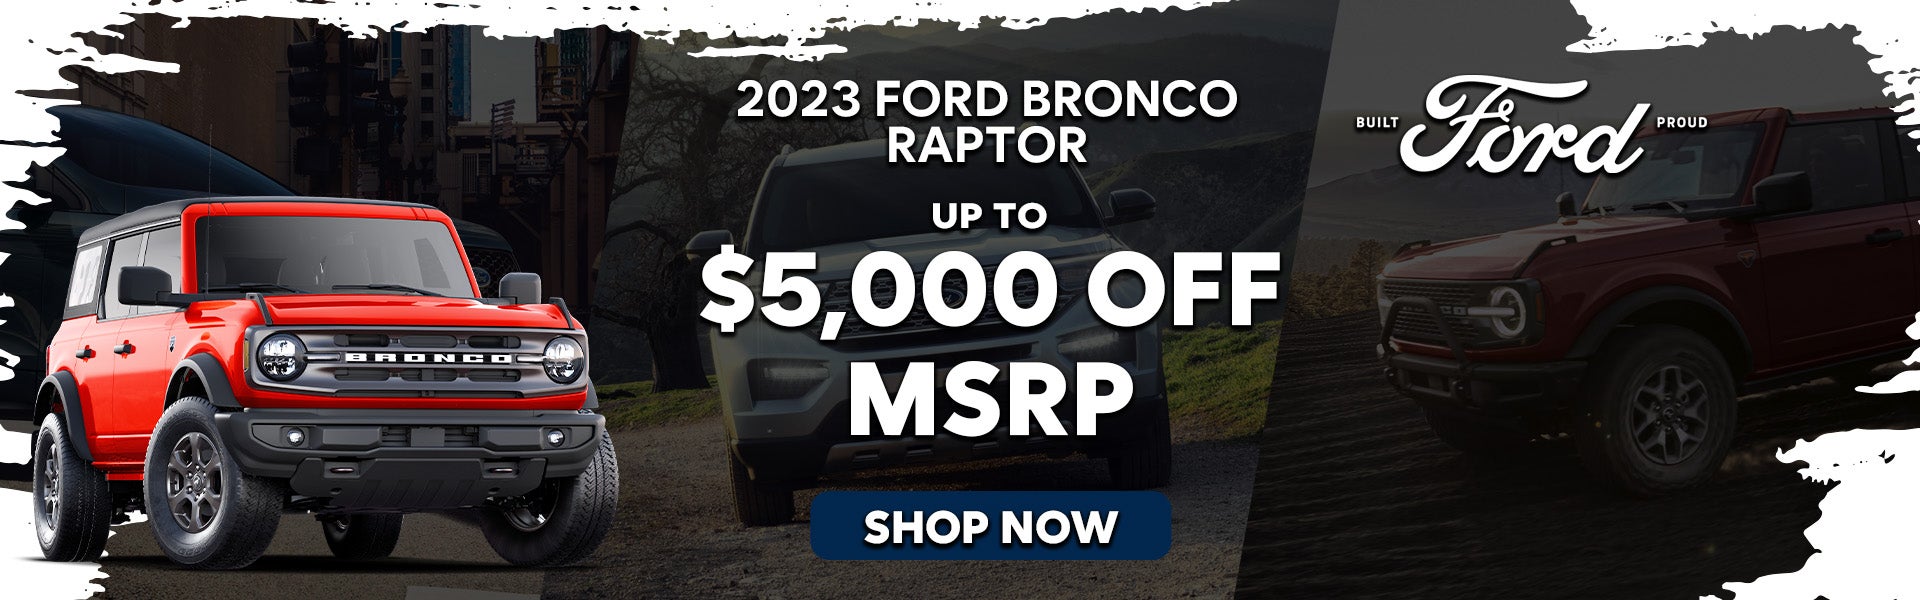 2023 Ford Bronco Raptor Special Offer